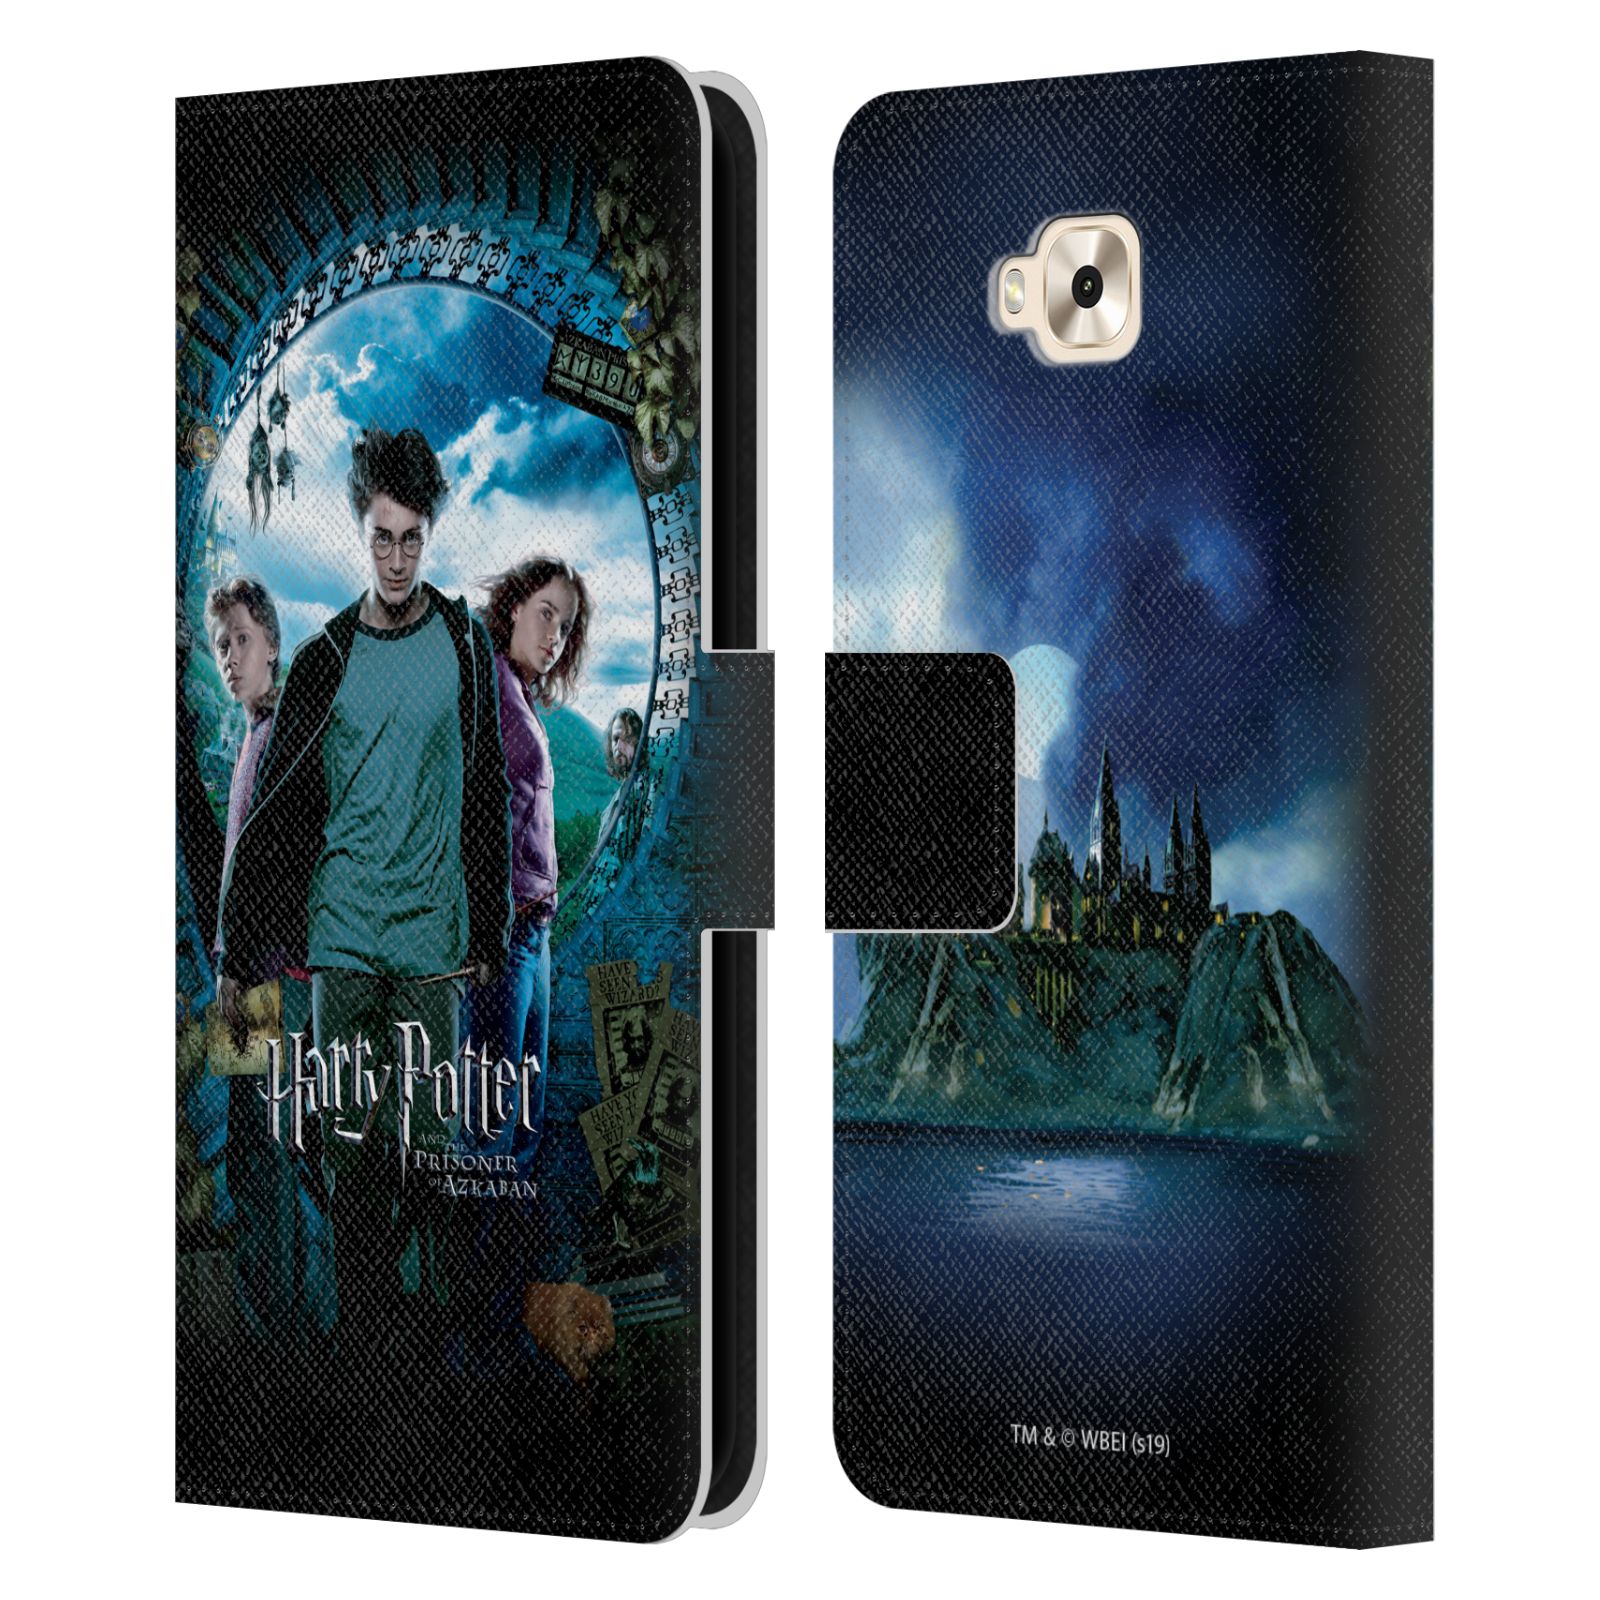 Pouzdro na mobil Asus Zenfone 4 Selfie ZD553KL  - HEAD CASE - Harry Potter - Vězeň z Azkabanu